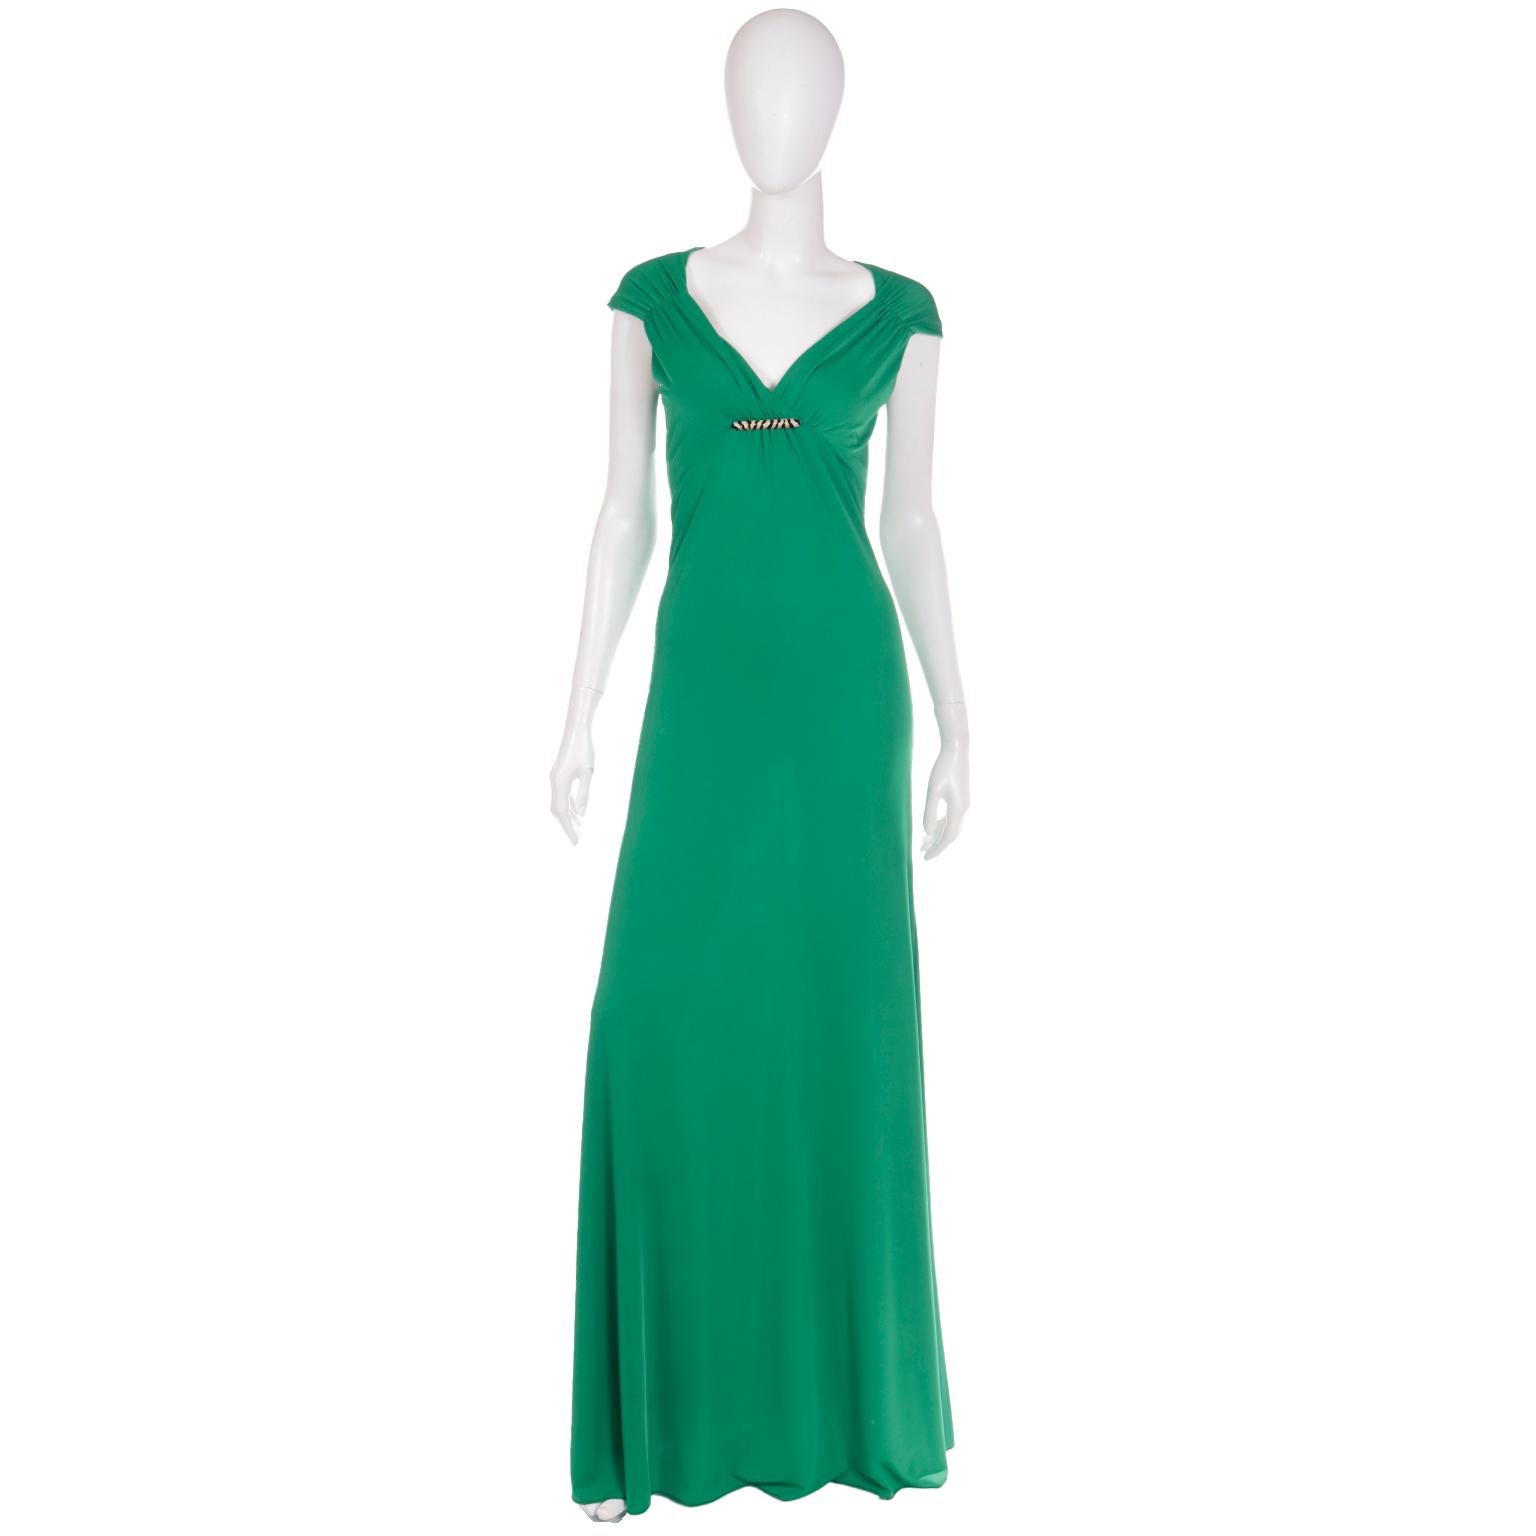 Cette magnifique robe de soirée longue en jersey vert Roberto Cavalli est en stock avec ses étiquettes d'origine et son autocollant holographique d'authenticité. Cette ravissante robe présente une taille empire avec des épaules froncées et un devant